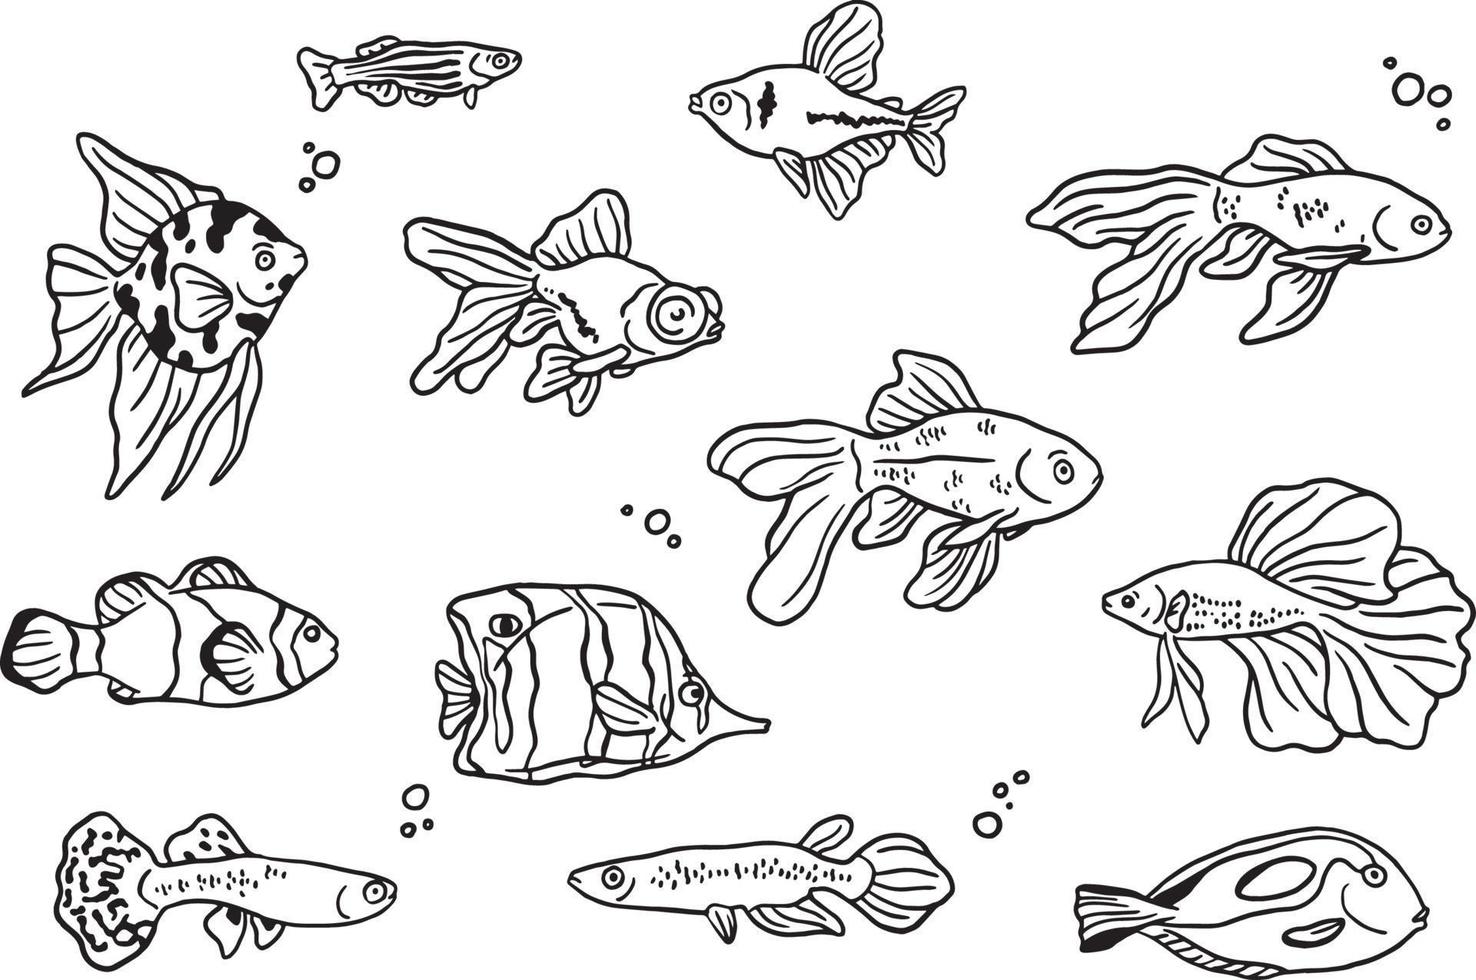 coleção de peixes desenhados à mão vetor